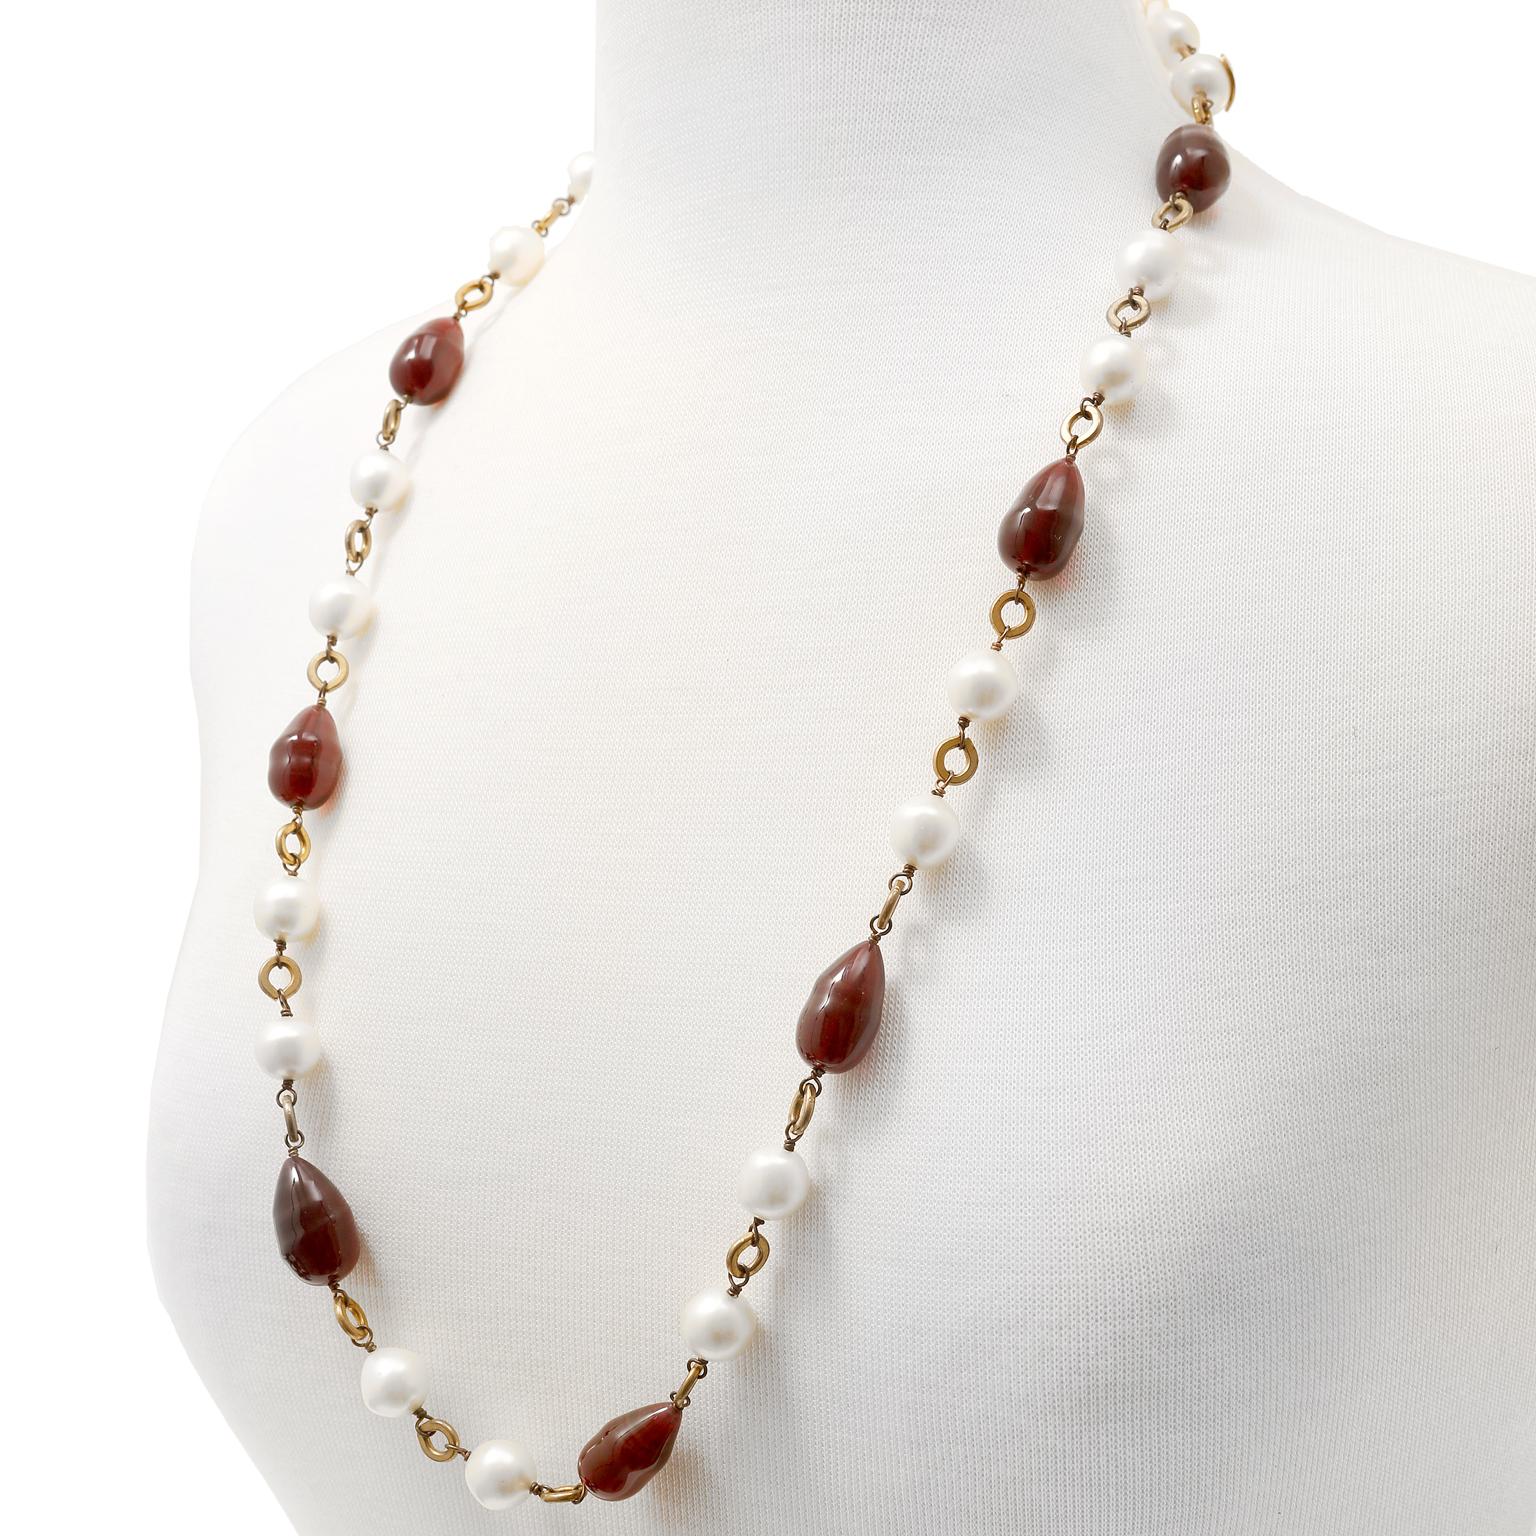 Cet authentique collier Sautoir de Chanel en Gripoix Rouge et Perle est en excellent état vintage des années 1980.  Des perles de verre Gripoix en forme de goutte d'eau d'un rouge profond alternent avec de fausses perles sur une longue chaîne en or.